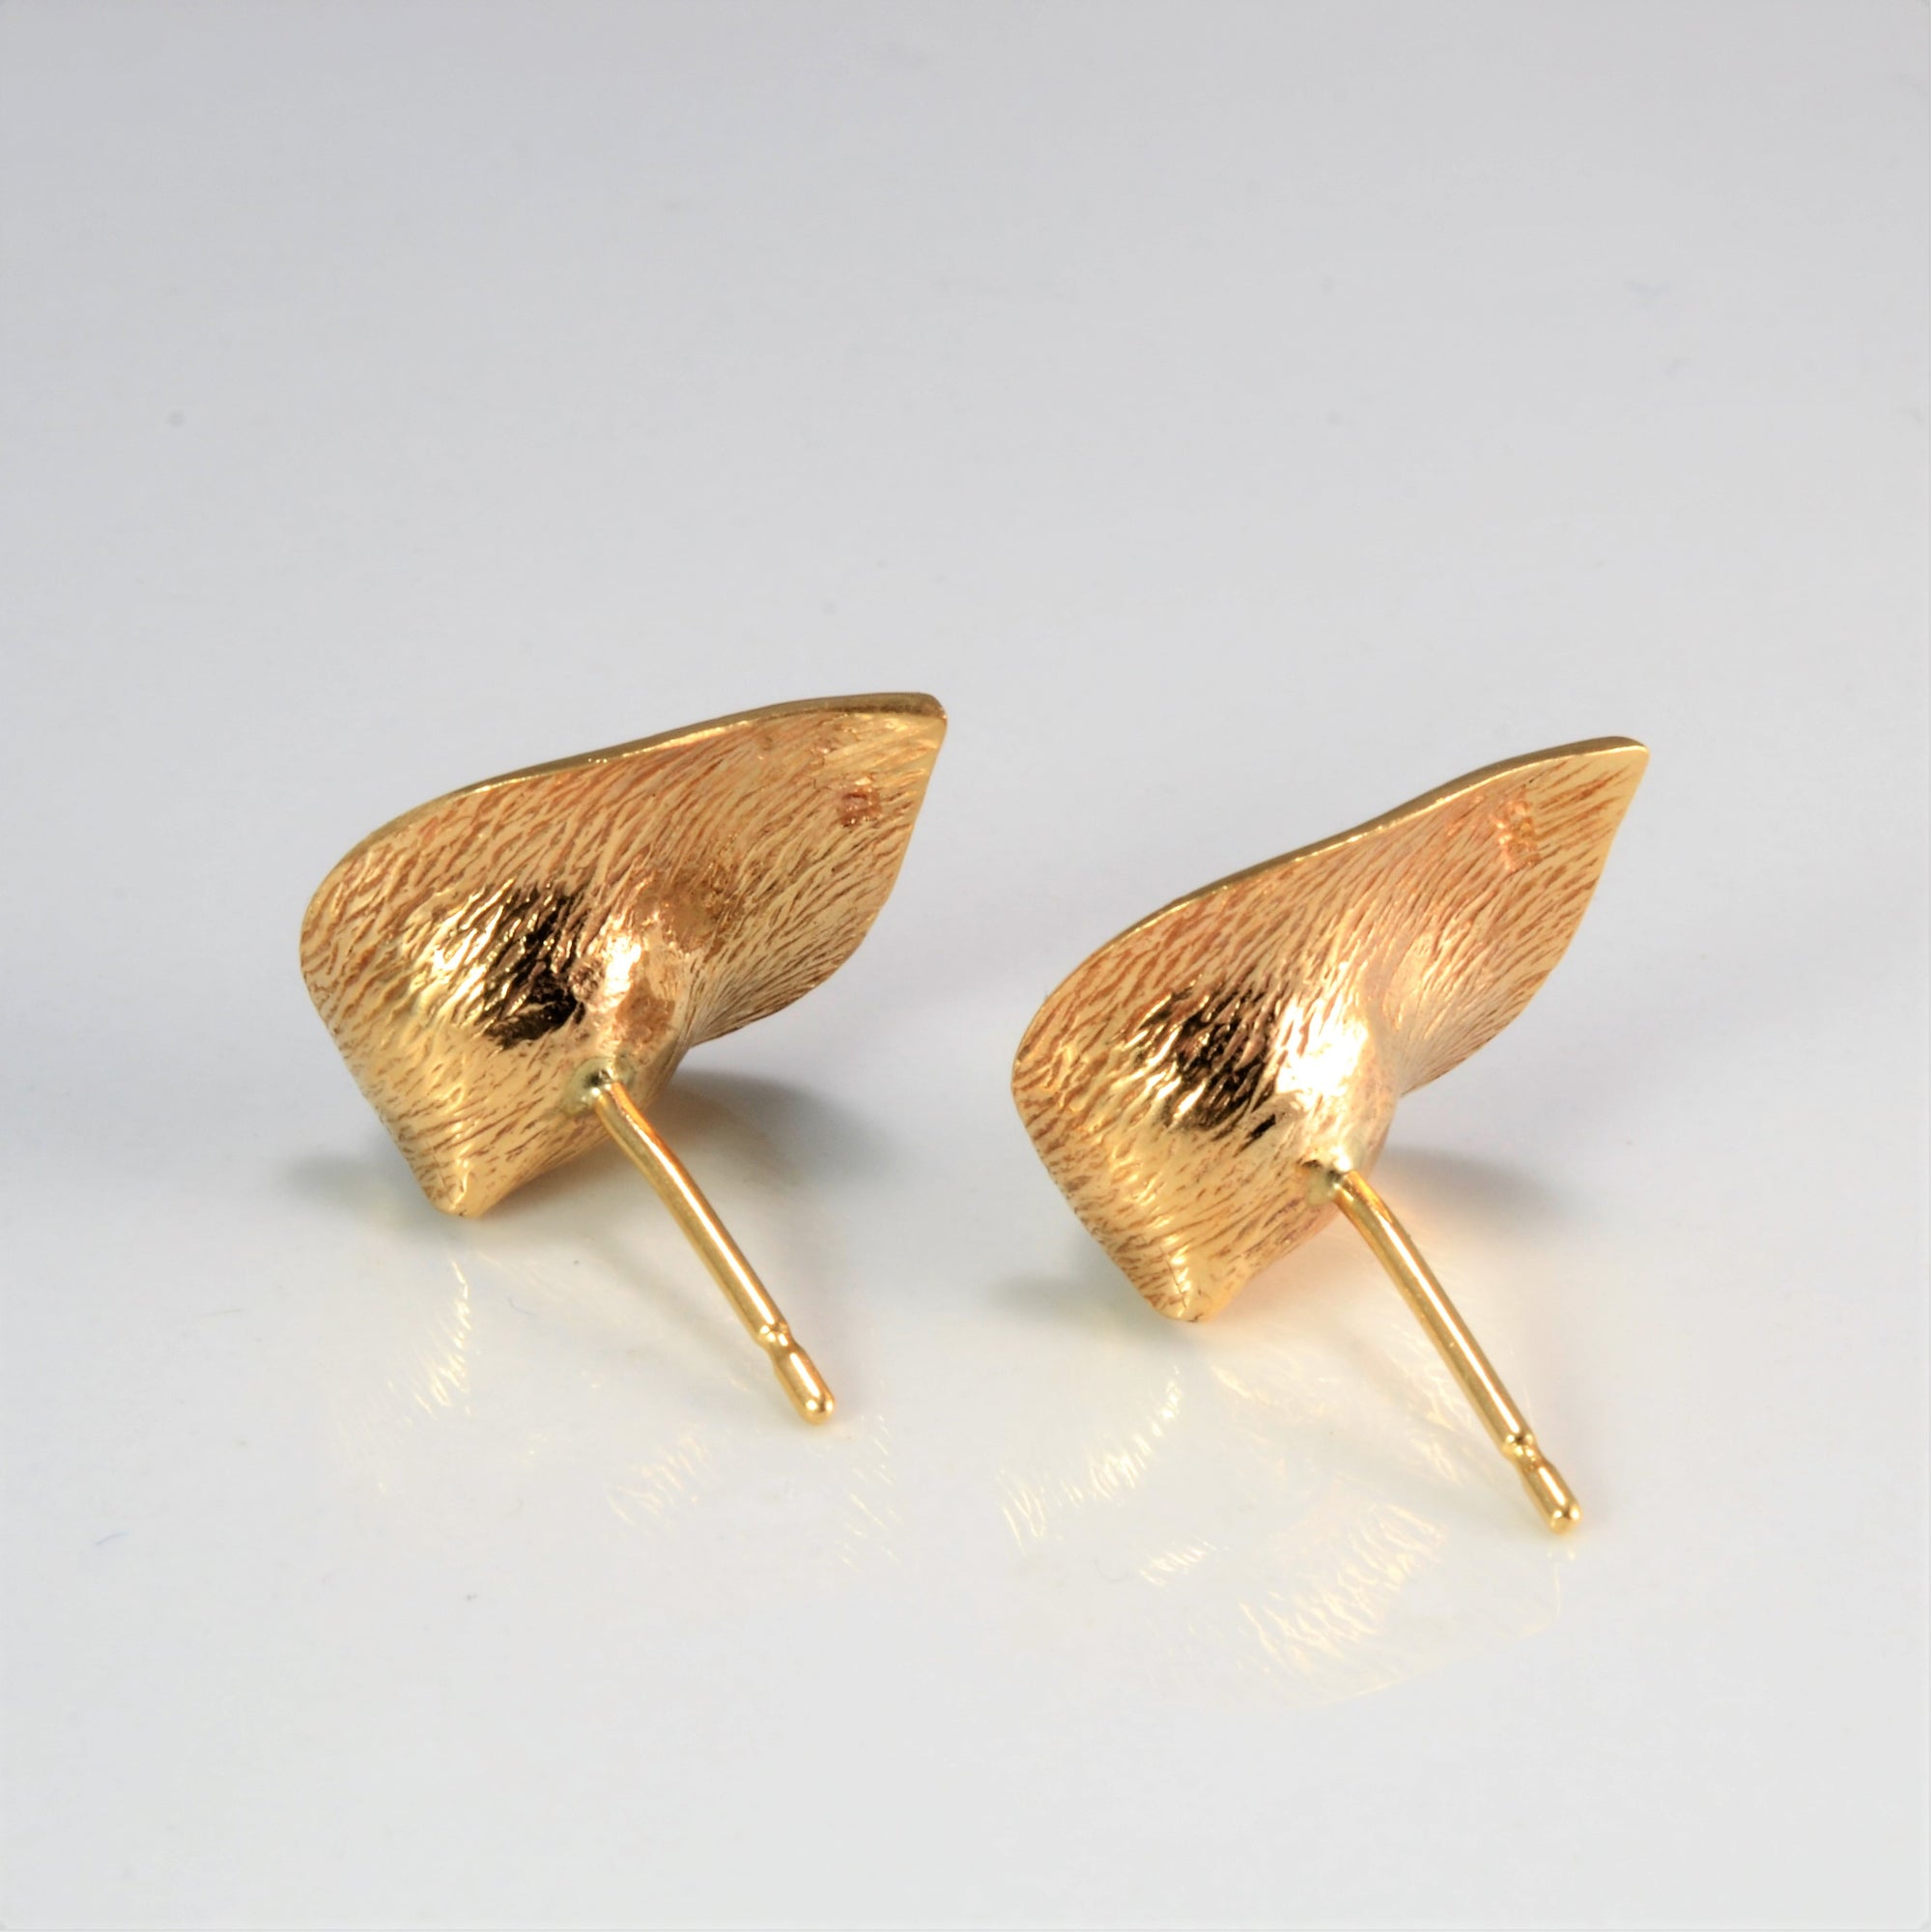 Leaf Design Pearl Earrings